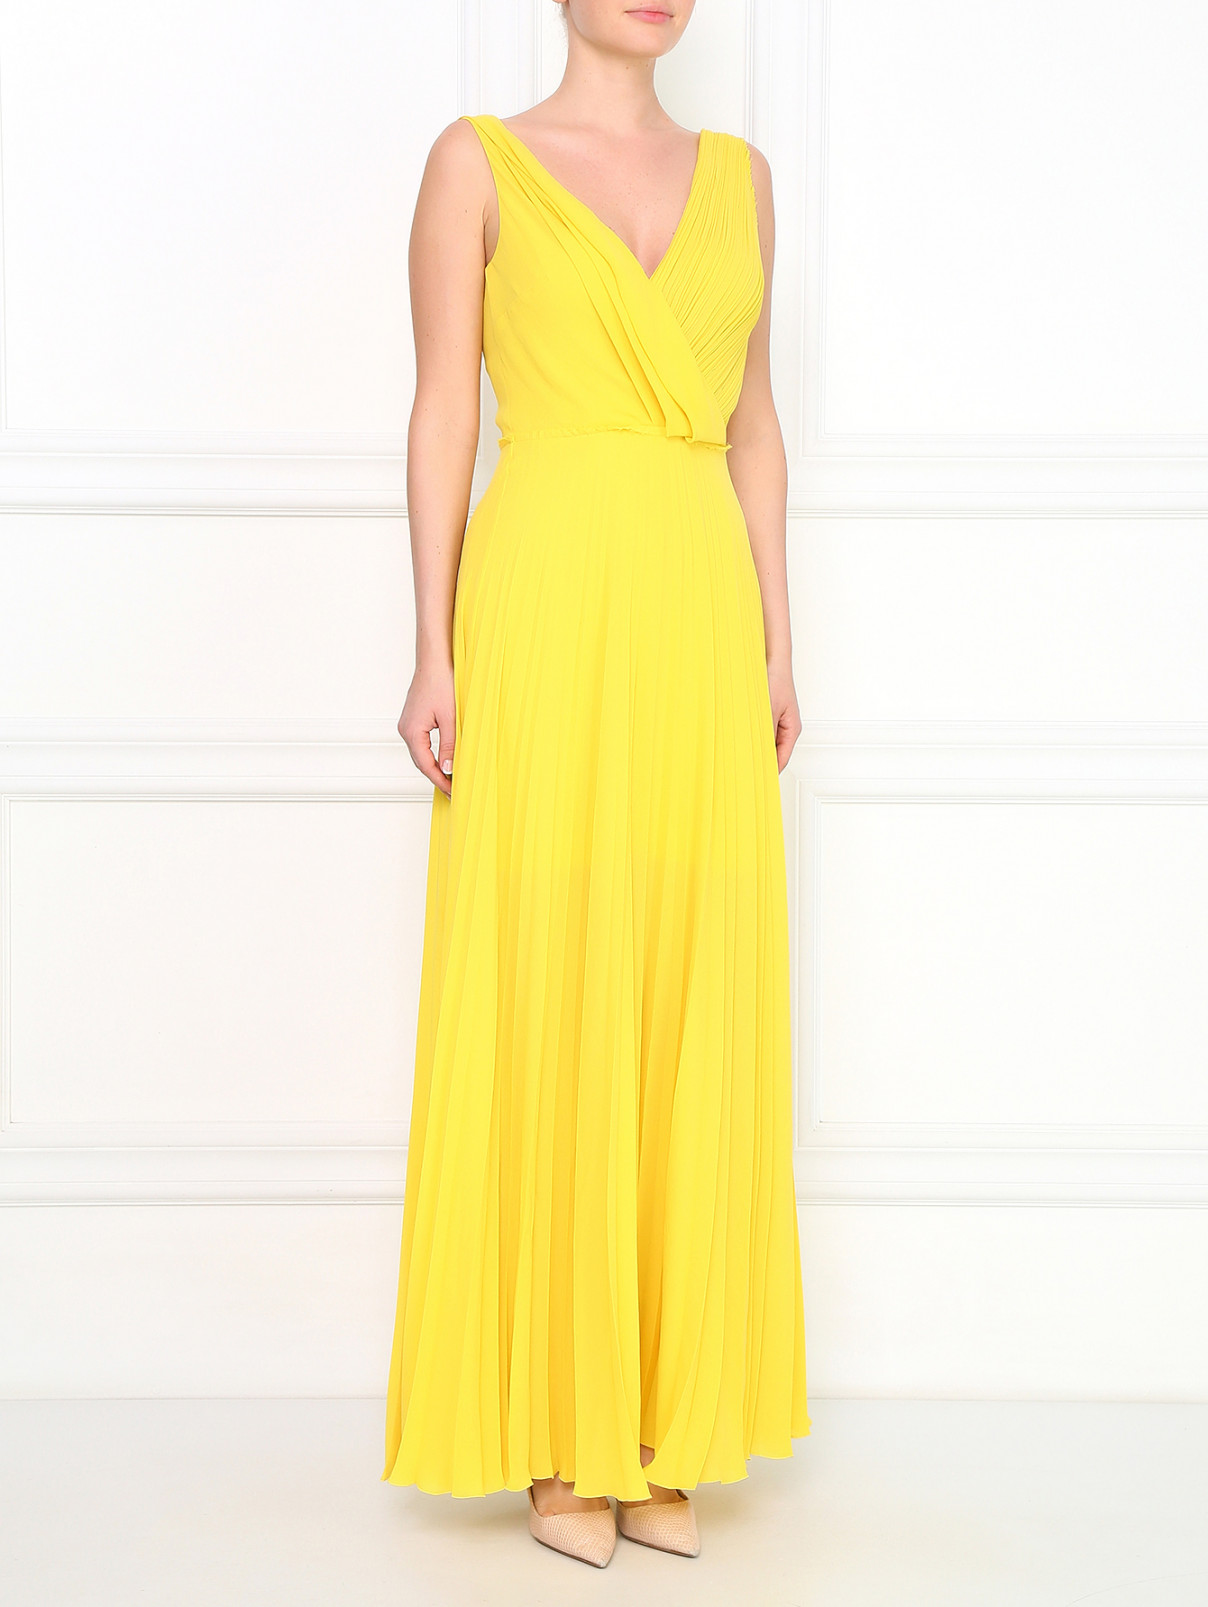 Платье-макси с плиссировкой и драпировками Cedric Charlier  –  Модель Общий вид  – Цвет:  Желтый